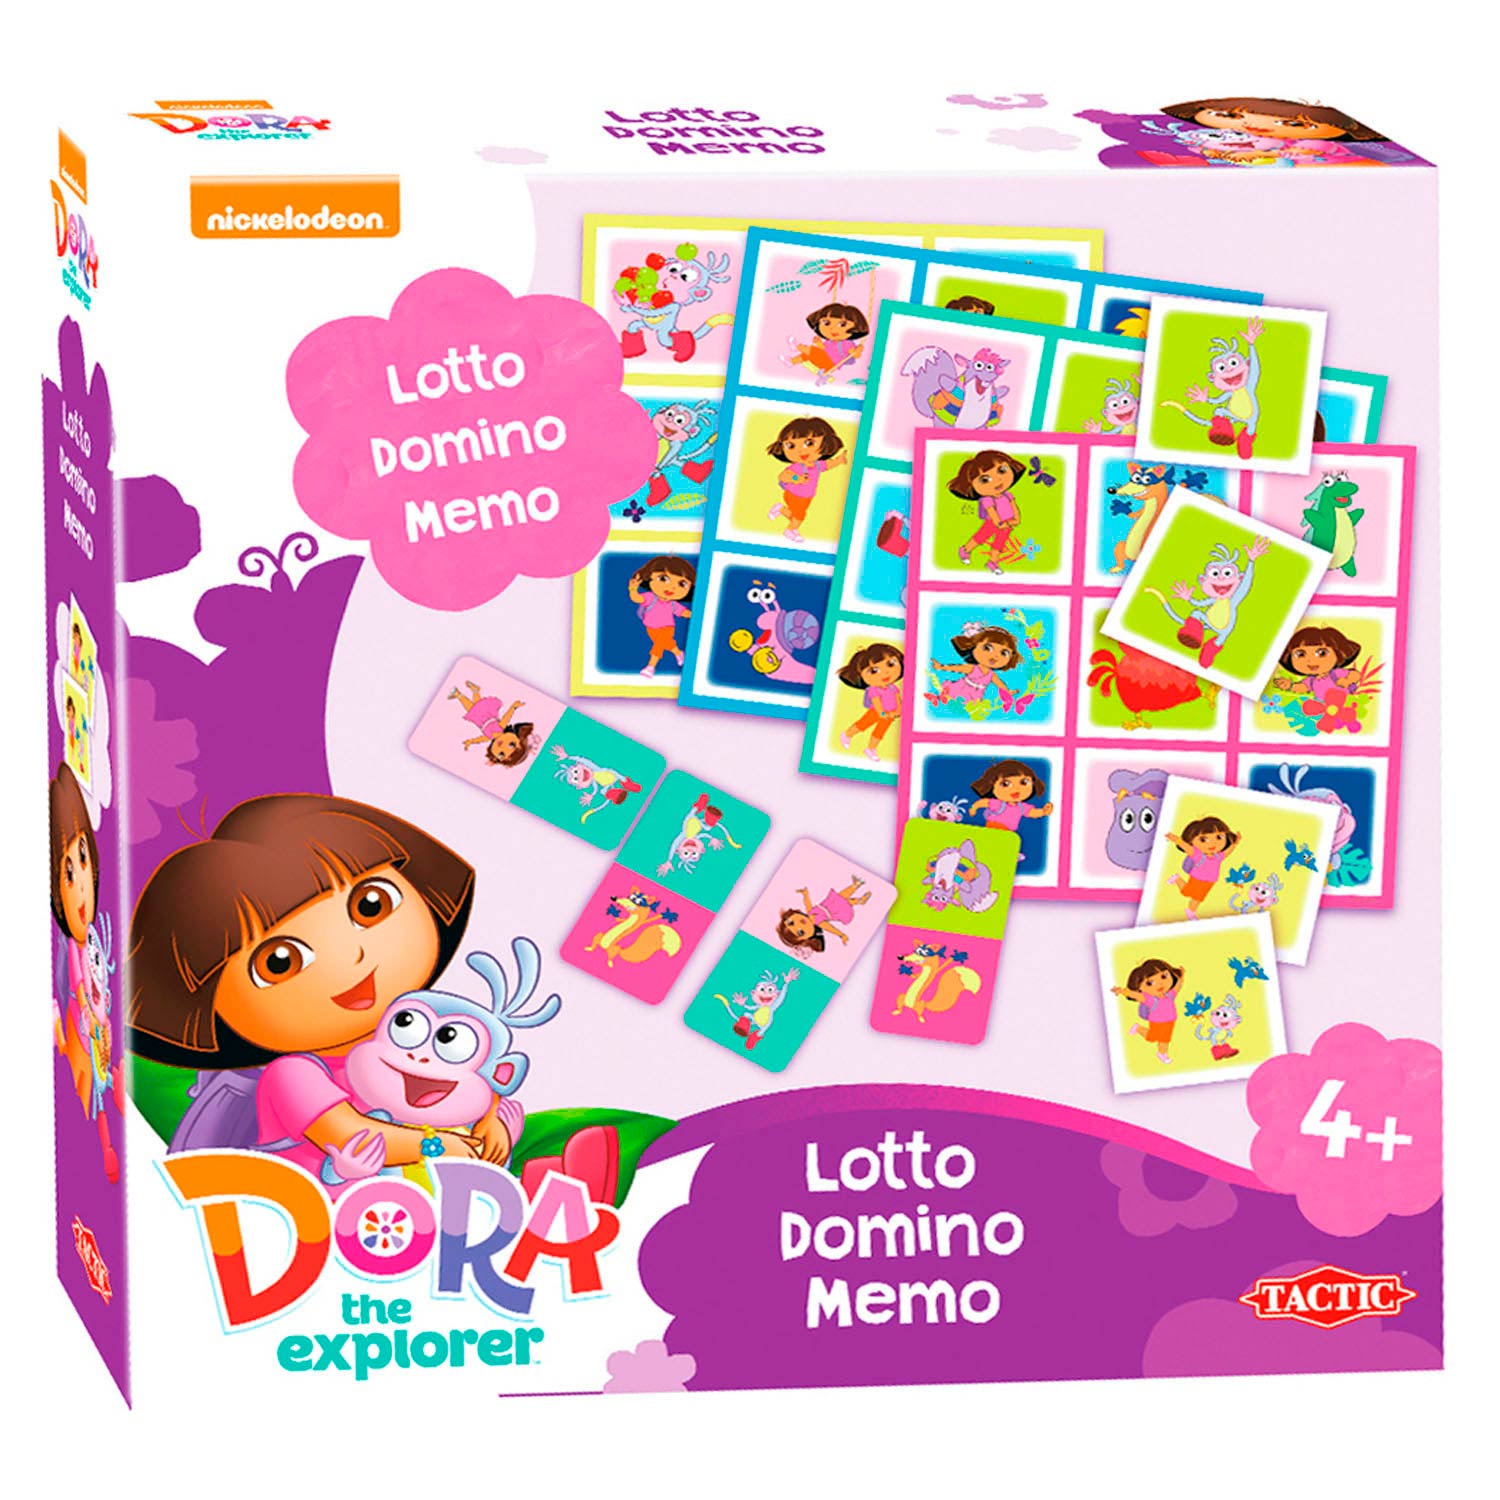 Dora Lotto,Domino,Memo - 3in1